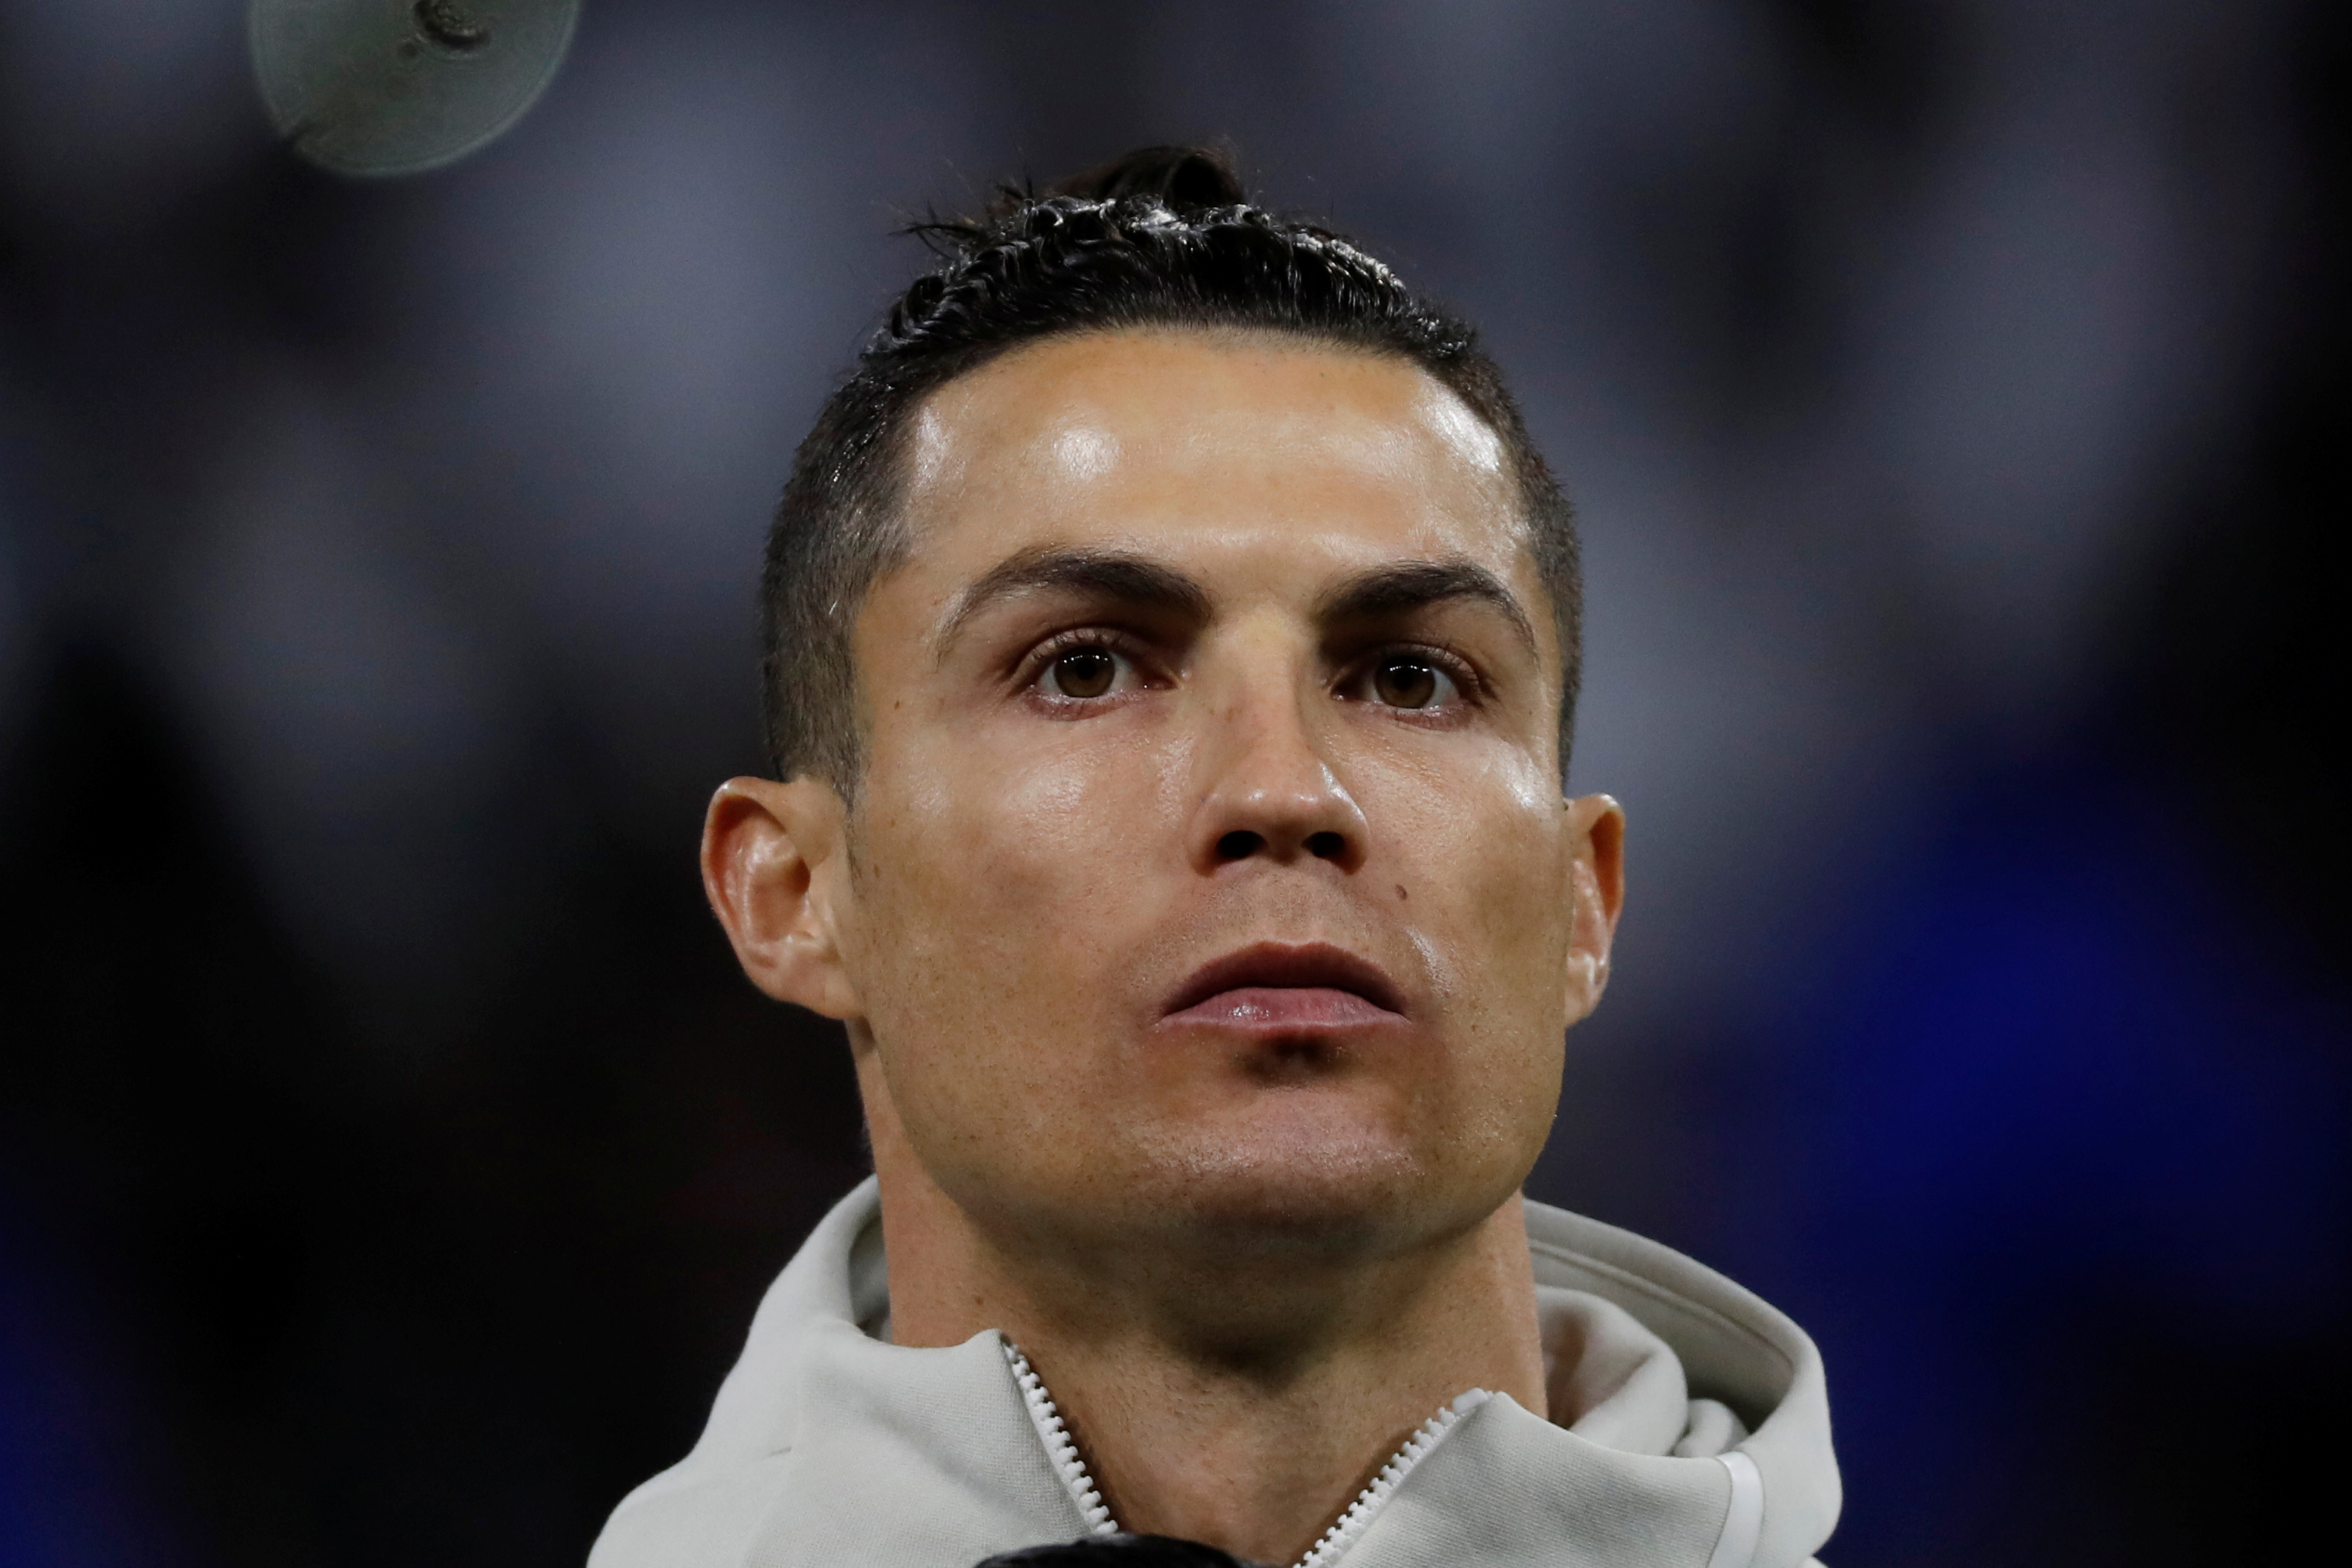 Cristiano Ronaldo les negó una “golosina prohibida” a sus hijos y reventaron las críticas (VIDEO)